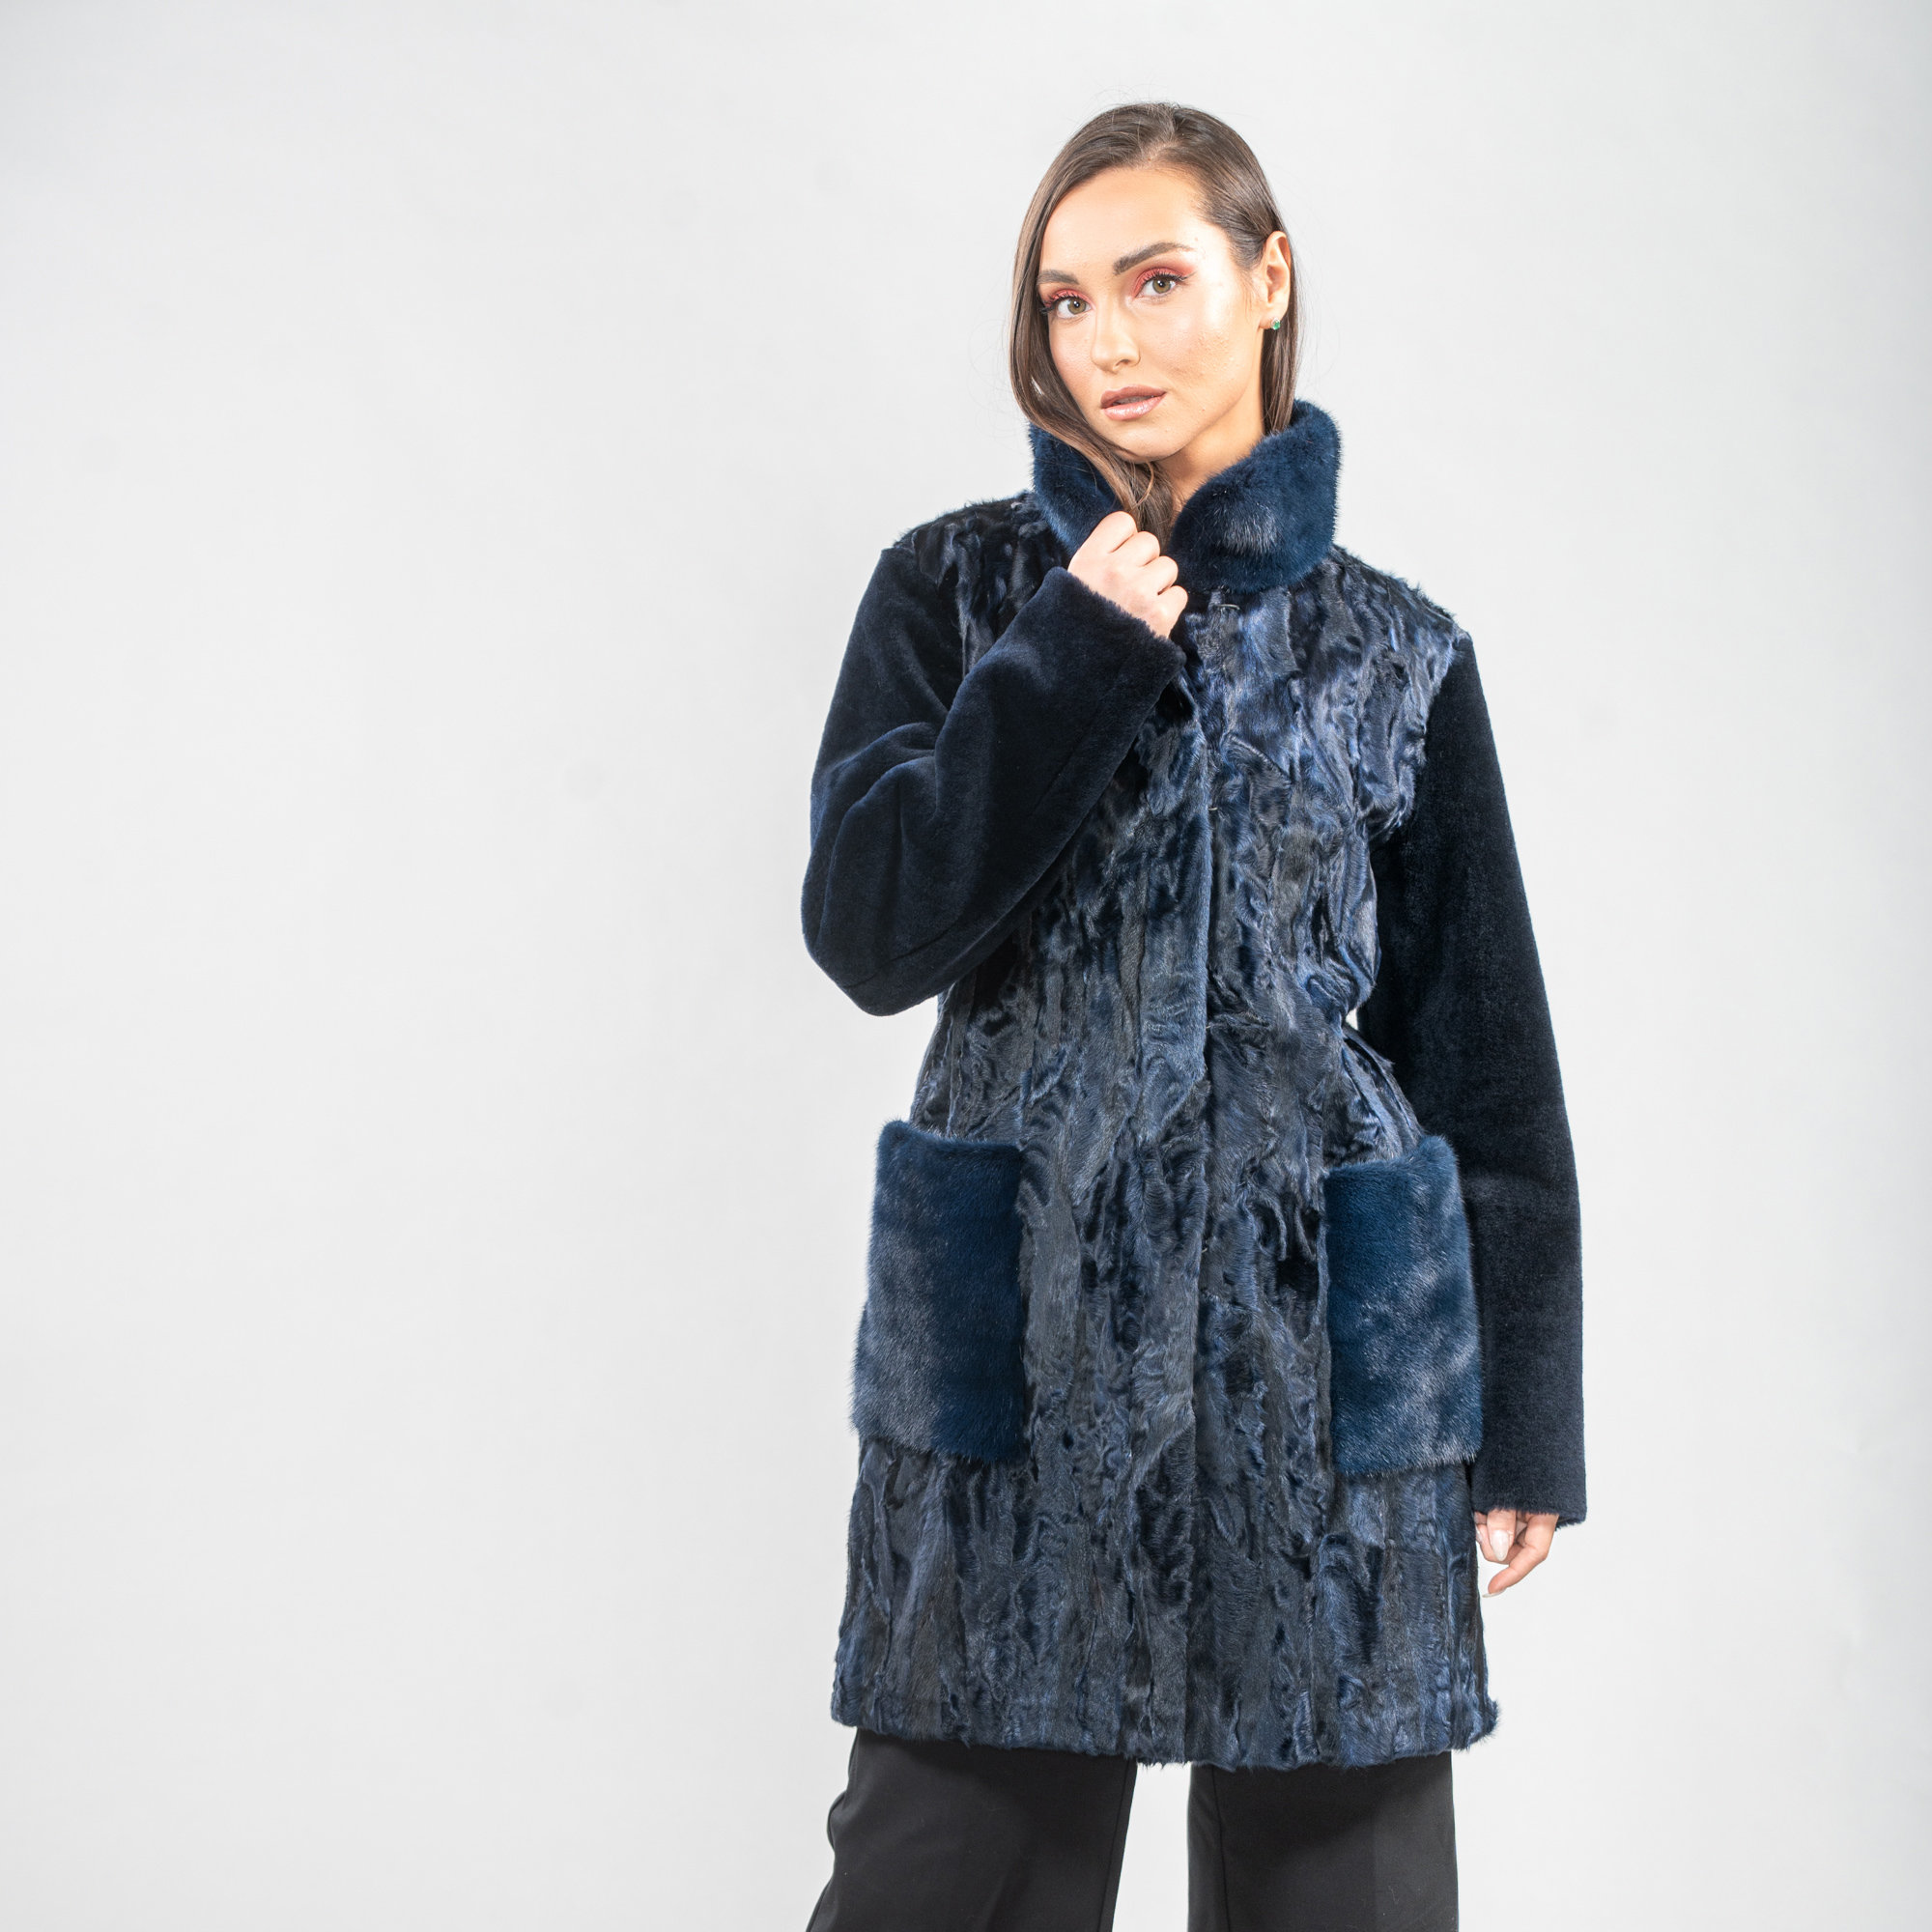 Blue Astrakhan fur coat with mink fur details